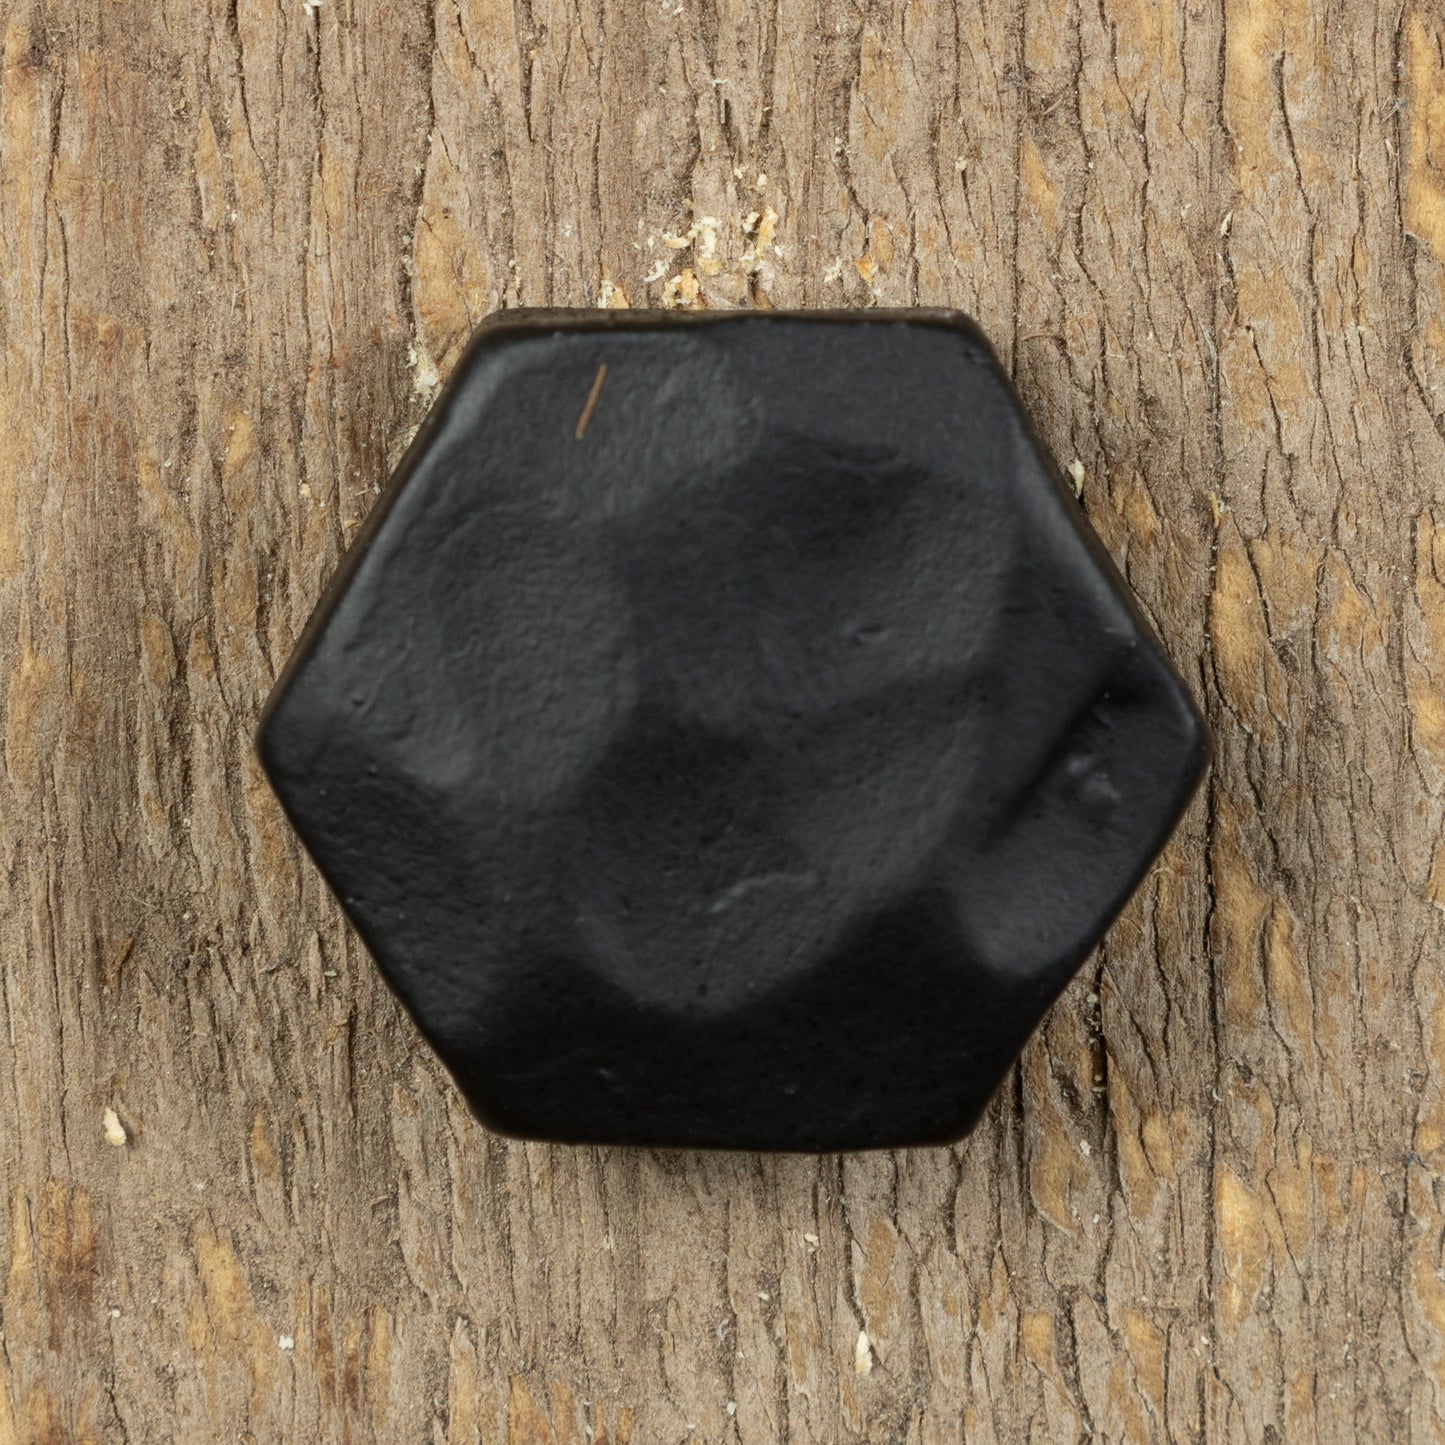 Perno de cabeza hexagonal martillado de 3/4" de diámetro